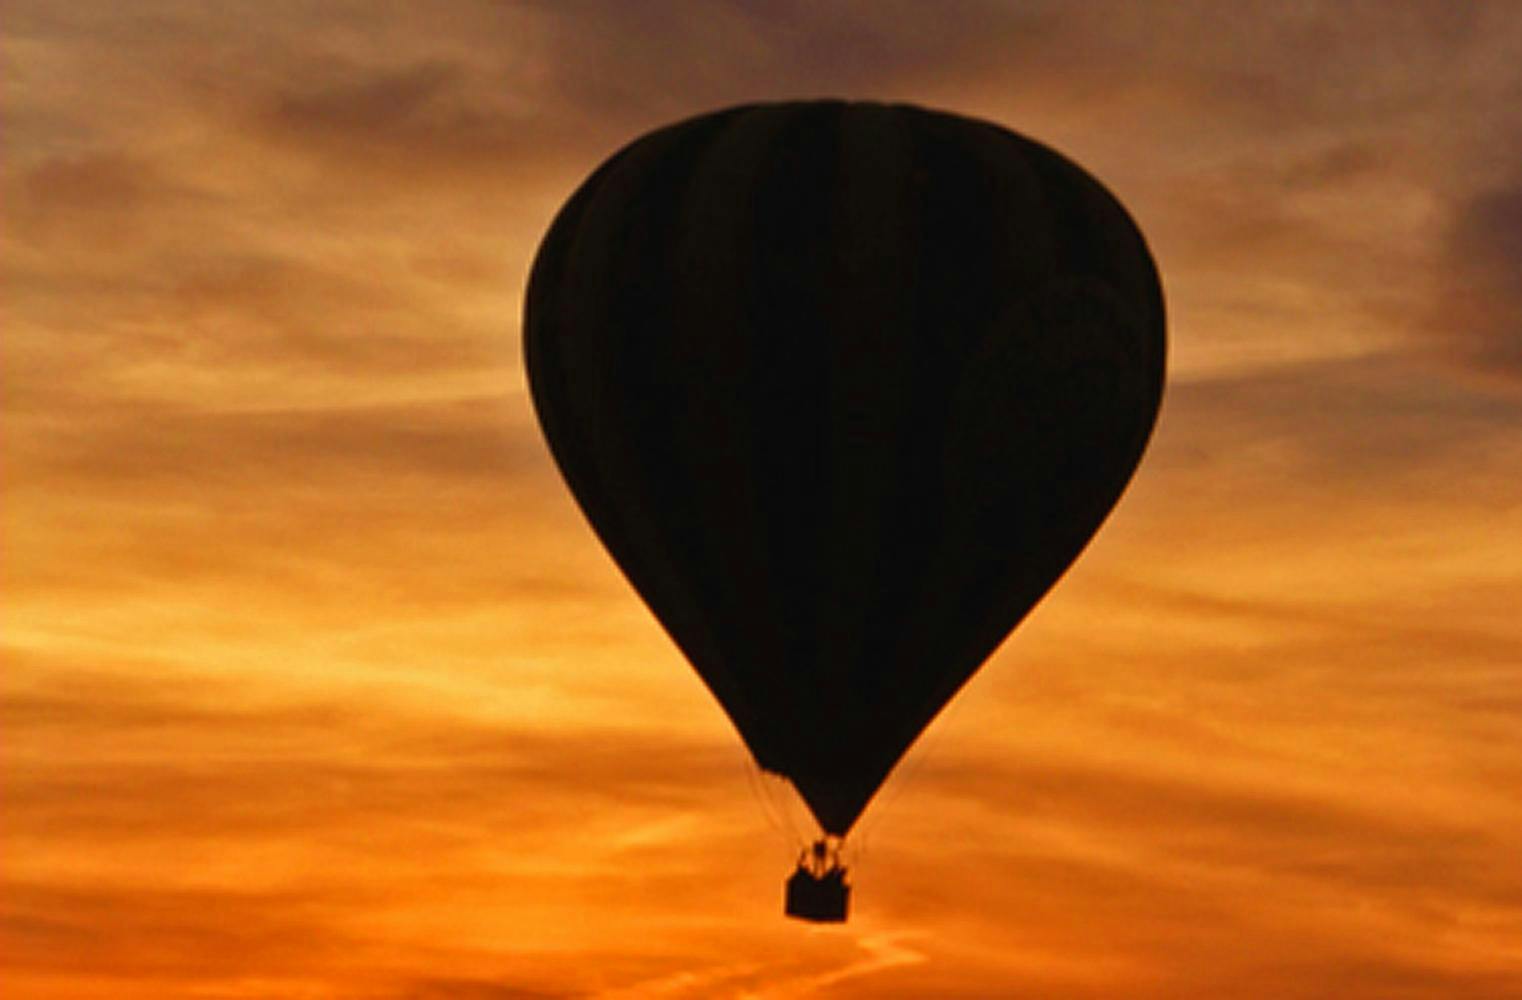 Heißluftballon Fahrt | Gruppenangebot für 10 | 3-4 Stunden